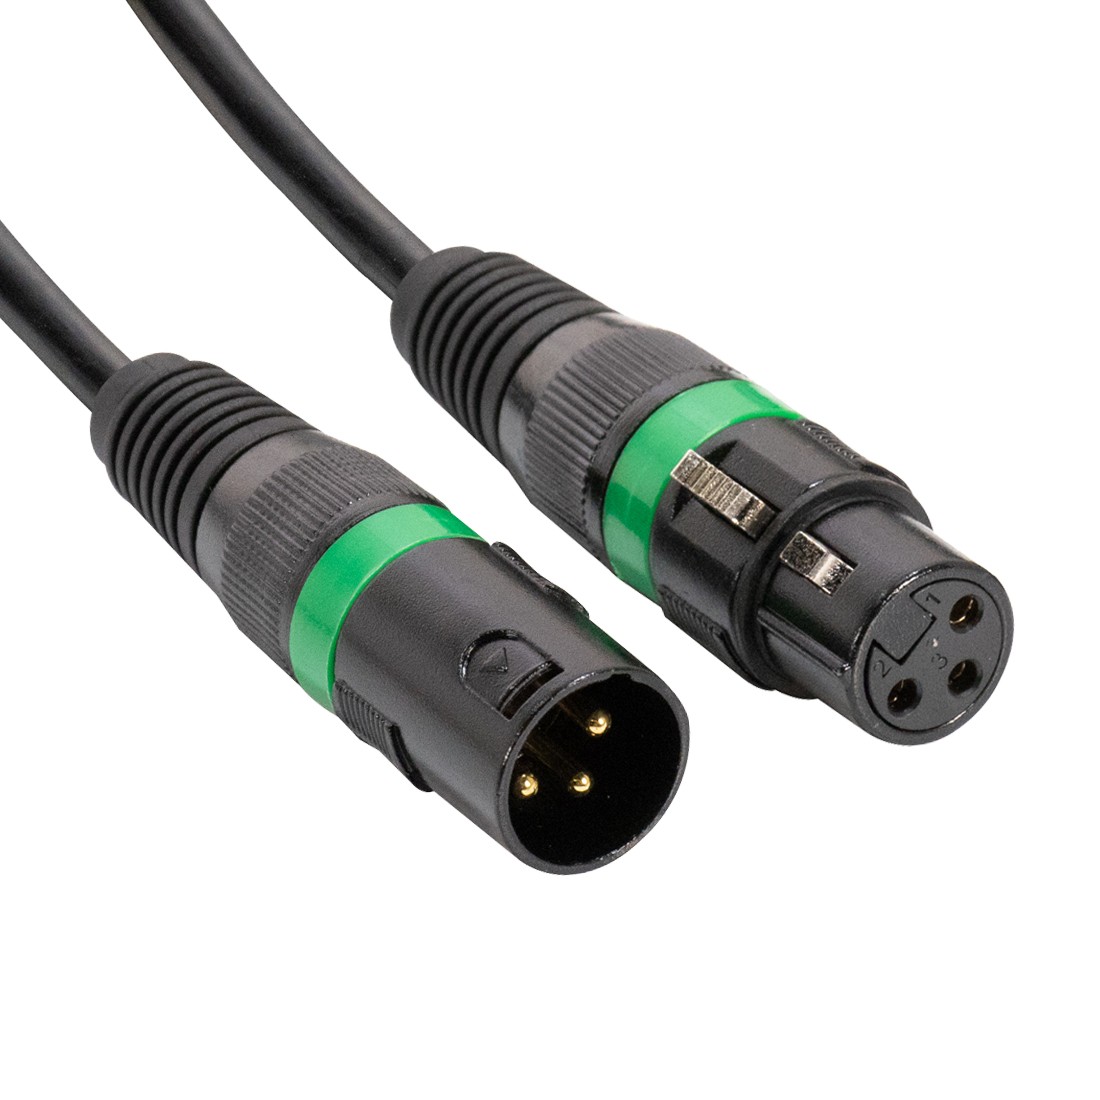 Accu-Cable - DMX Kabel - XLR 3pin male - XLR 3pin female - 5 m